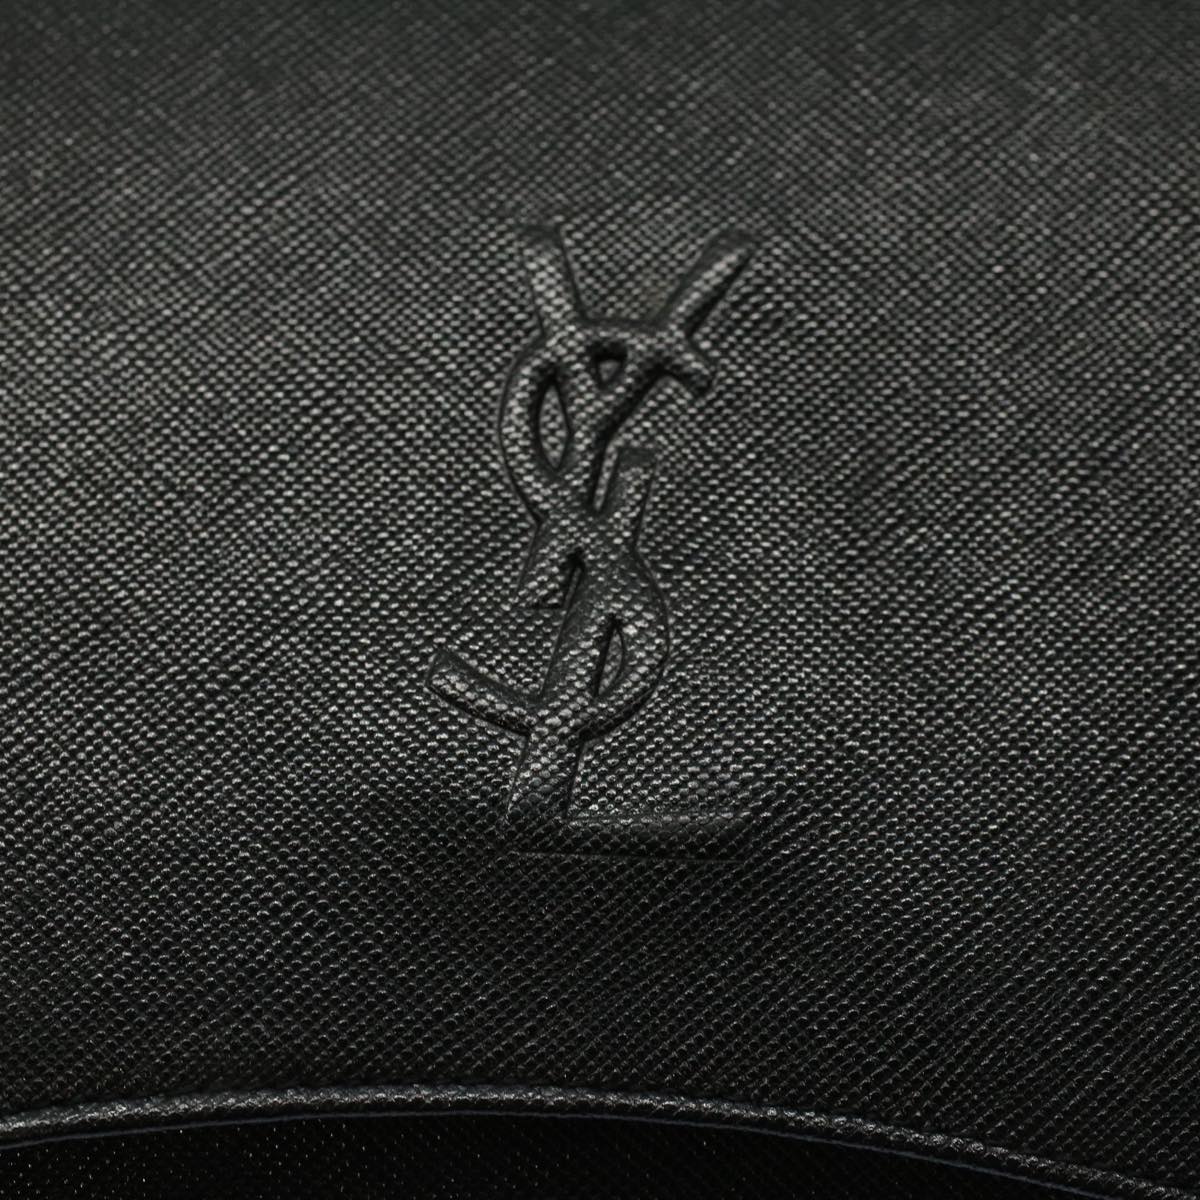 Saint Laurent Clutch Bag Leather Black Auth Yk8934